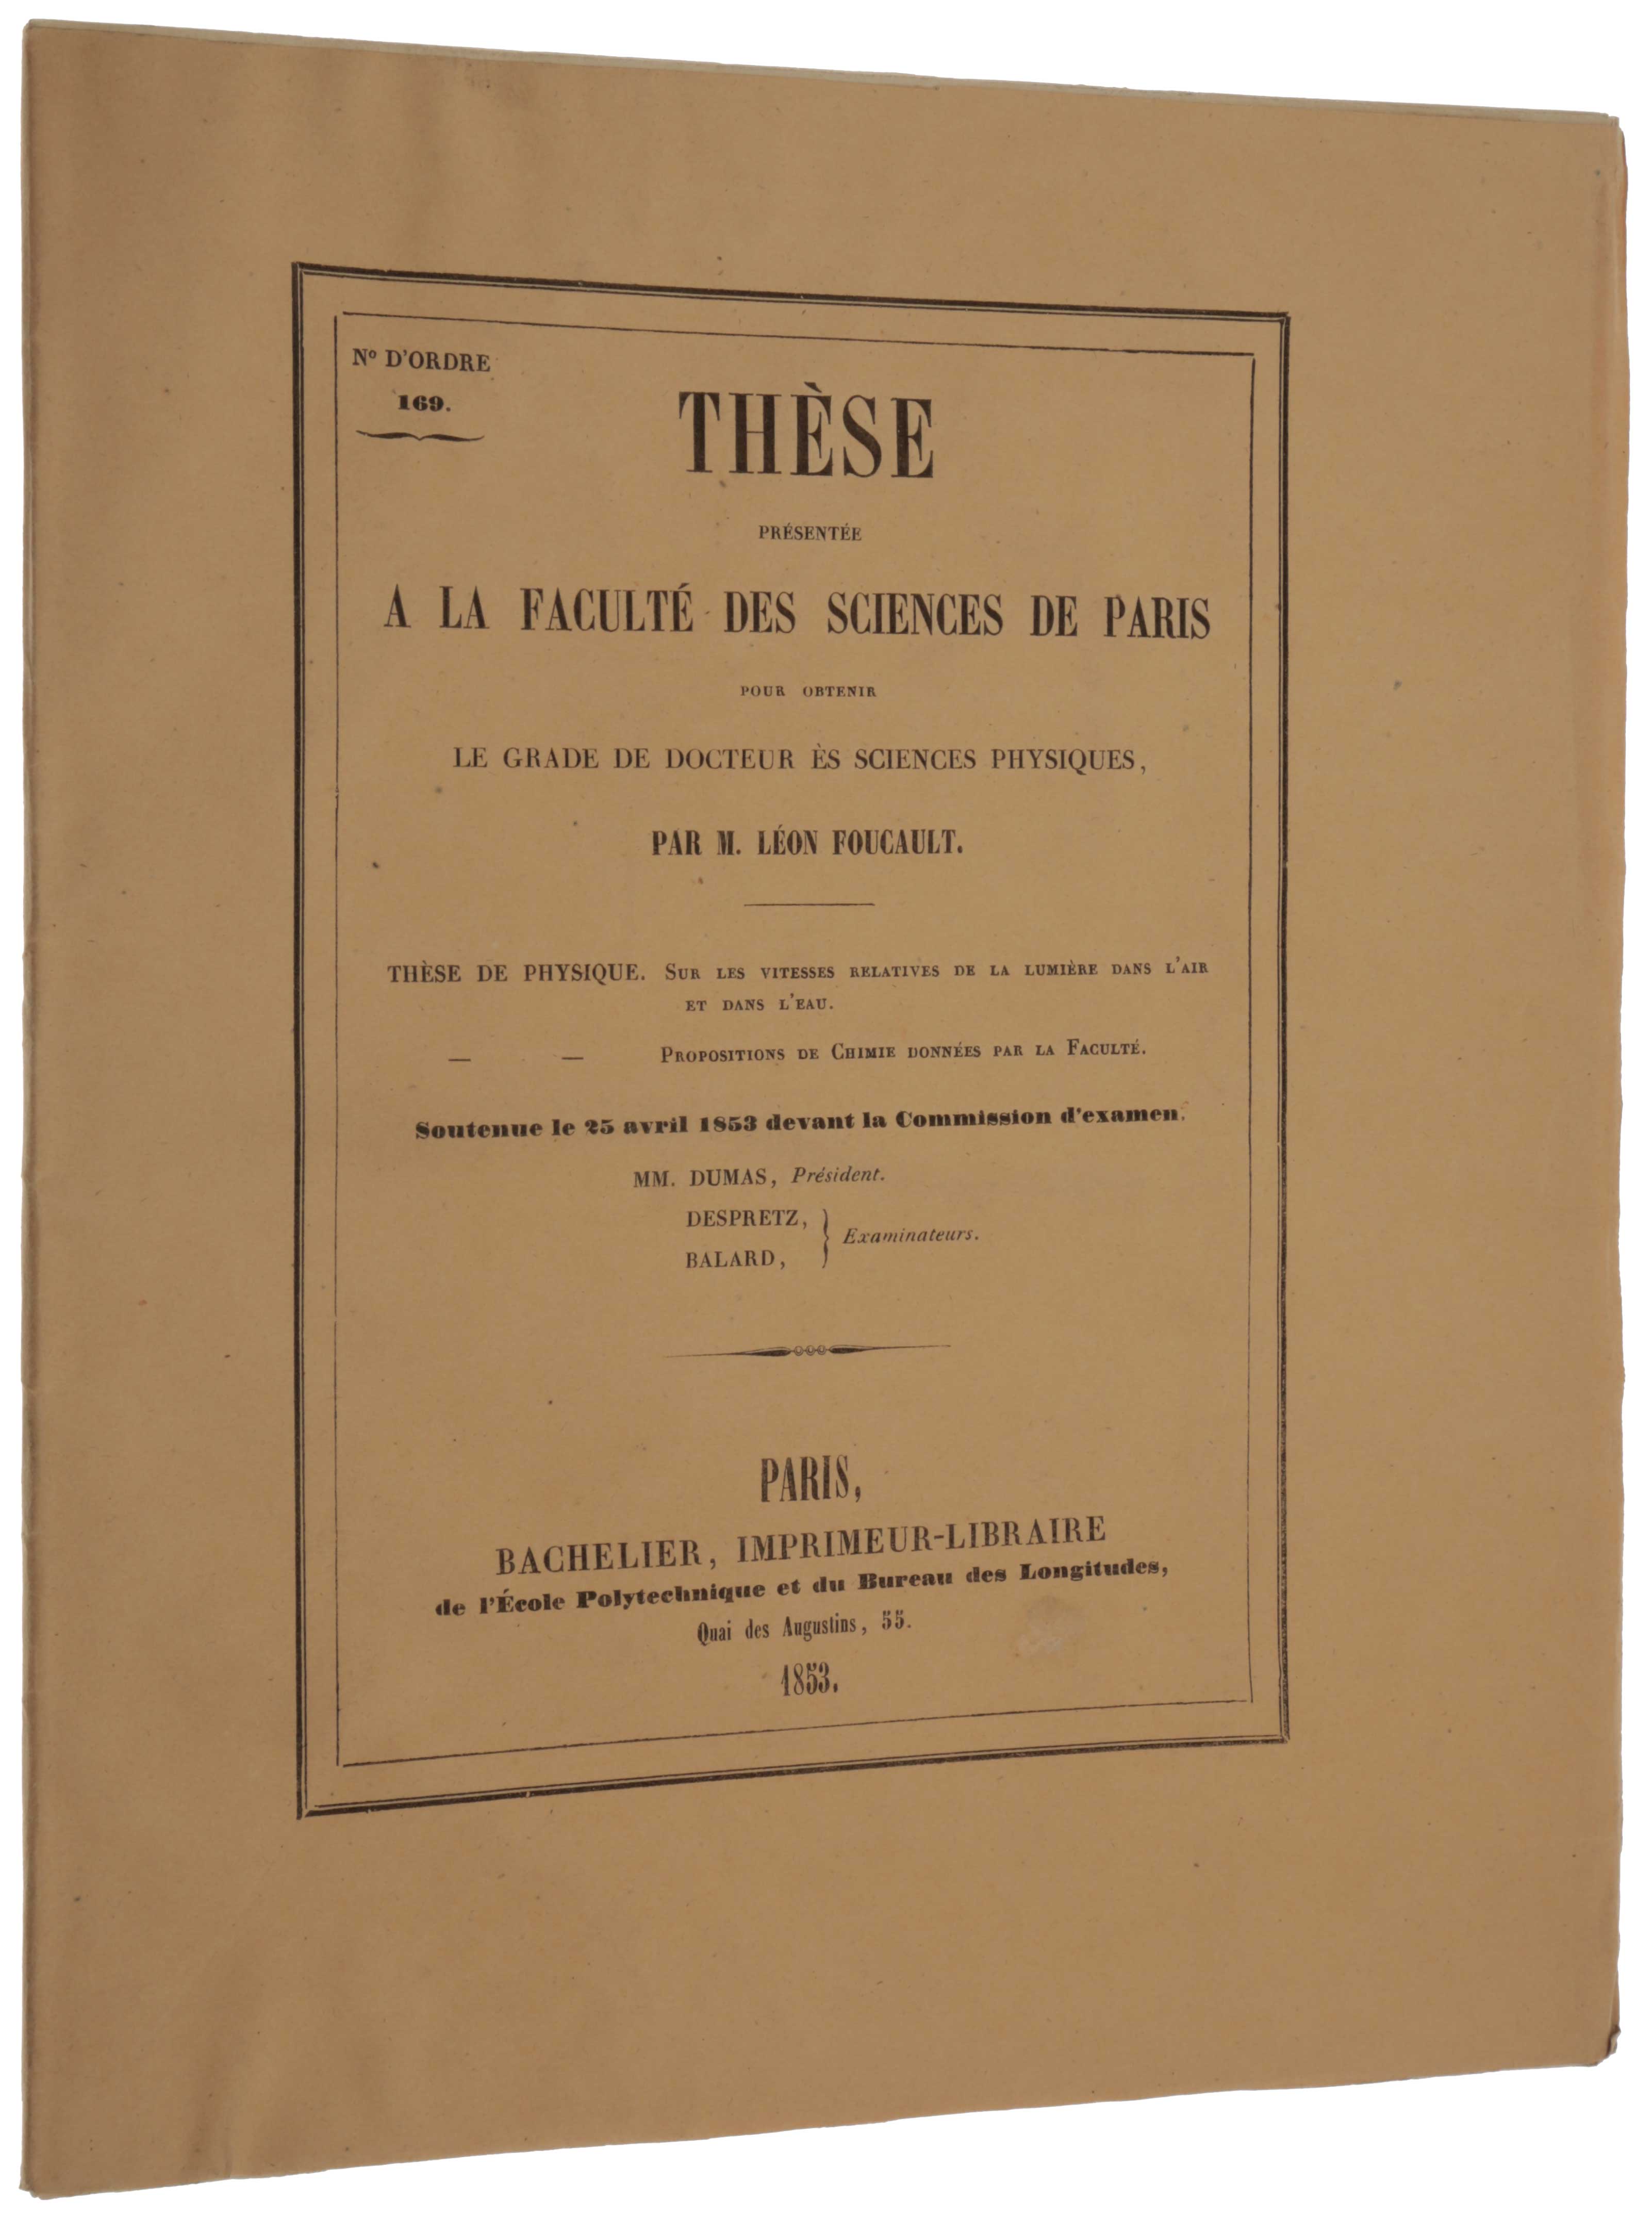 Item #4843 Thèse présentée à la faculté des sciences de Paris... Sur les vitesses rélatives de la lumière dans l’air et dans l’eau. Jean Bernard Léon FOUCAULT.